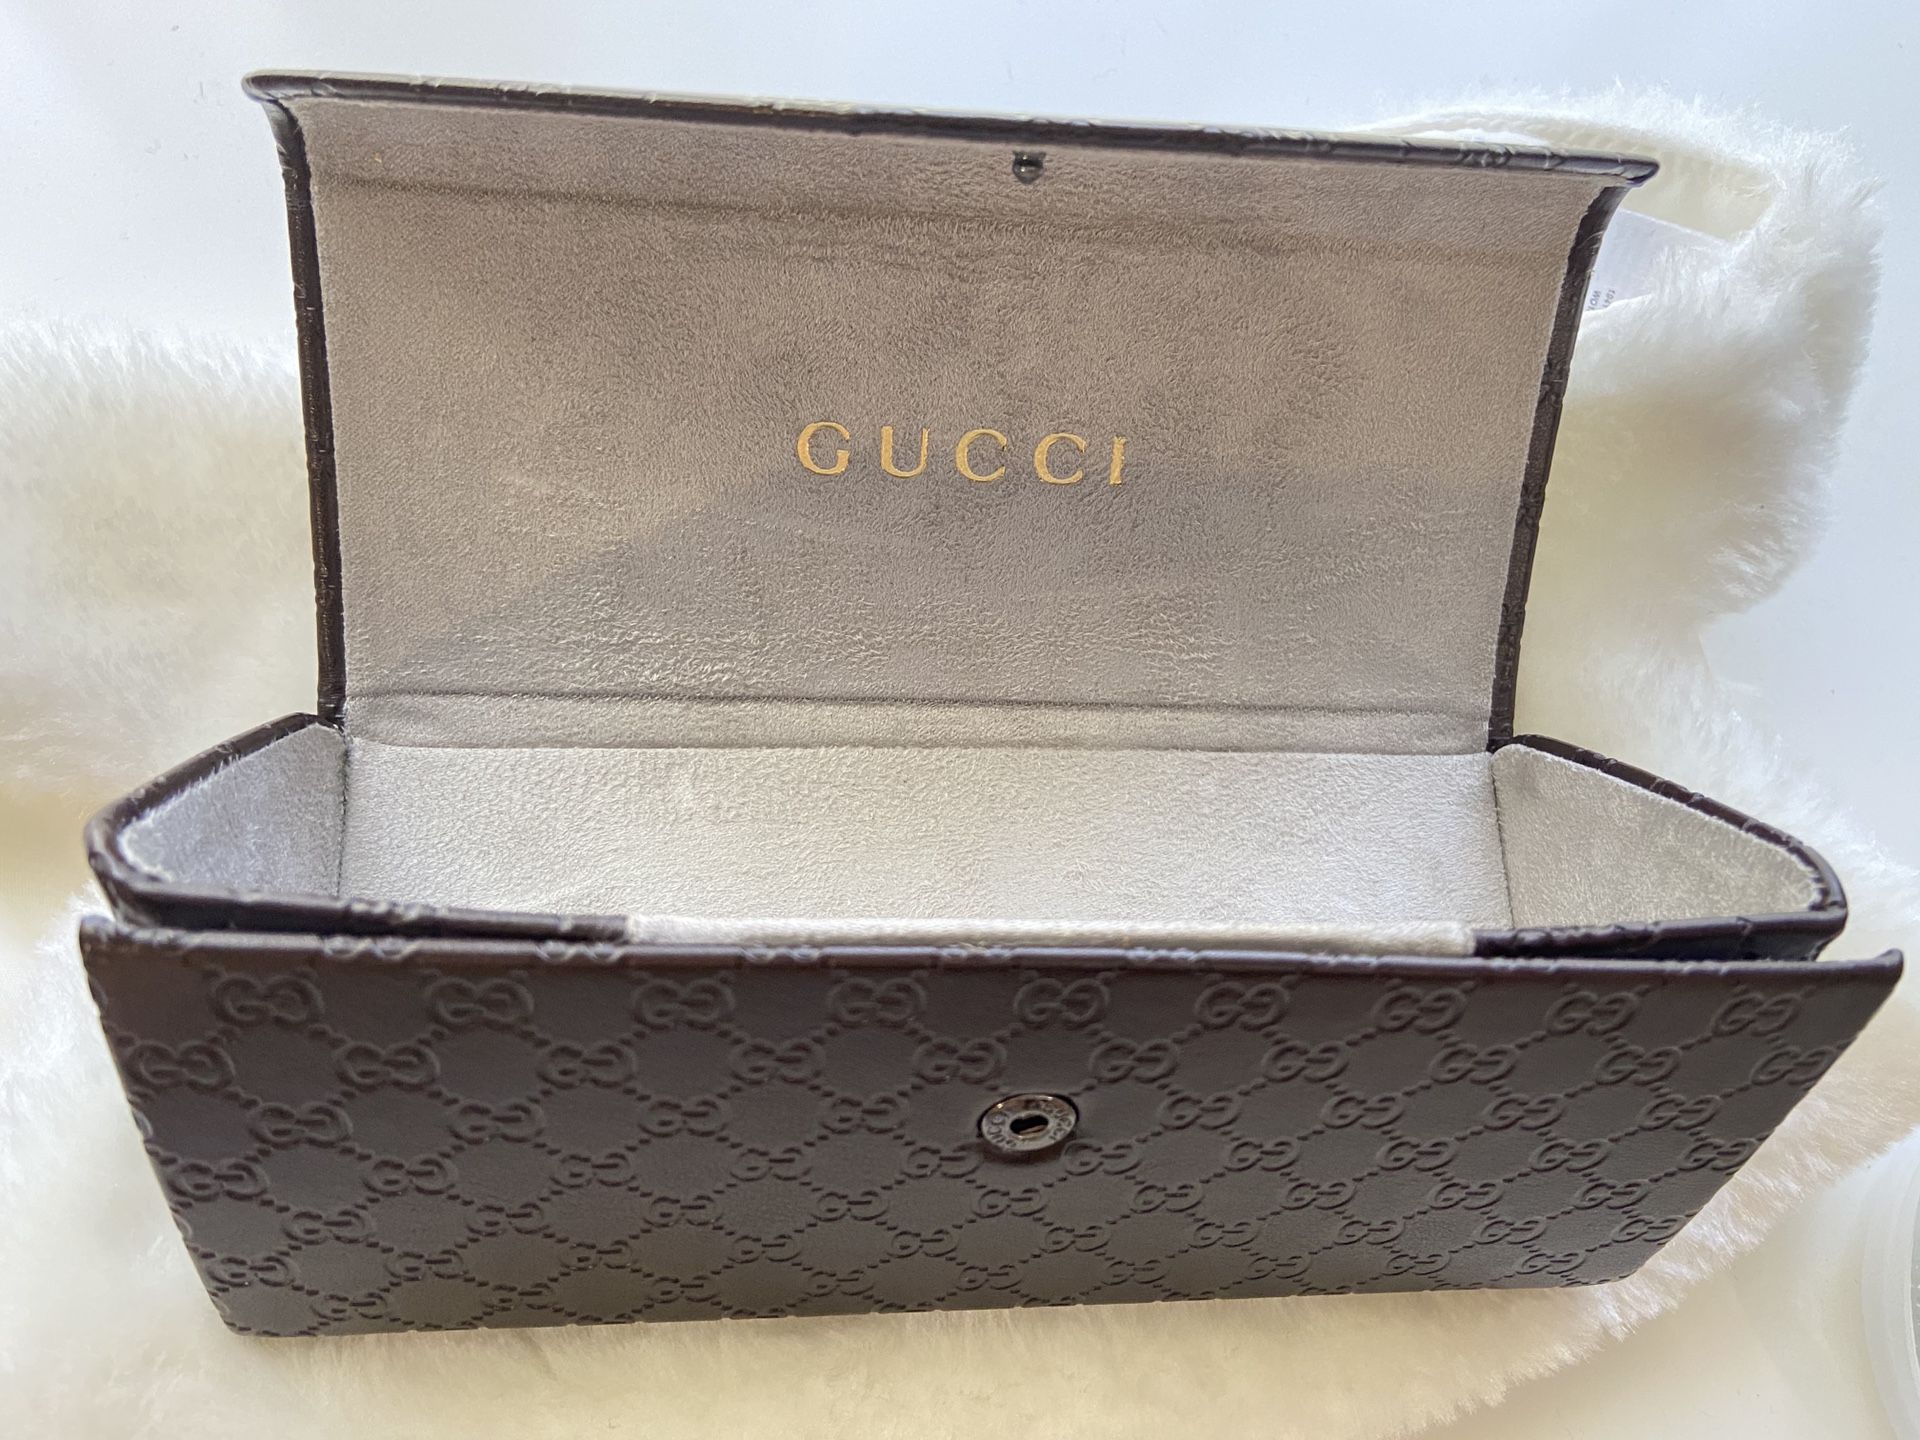 Gucci glasses case